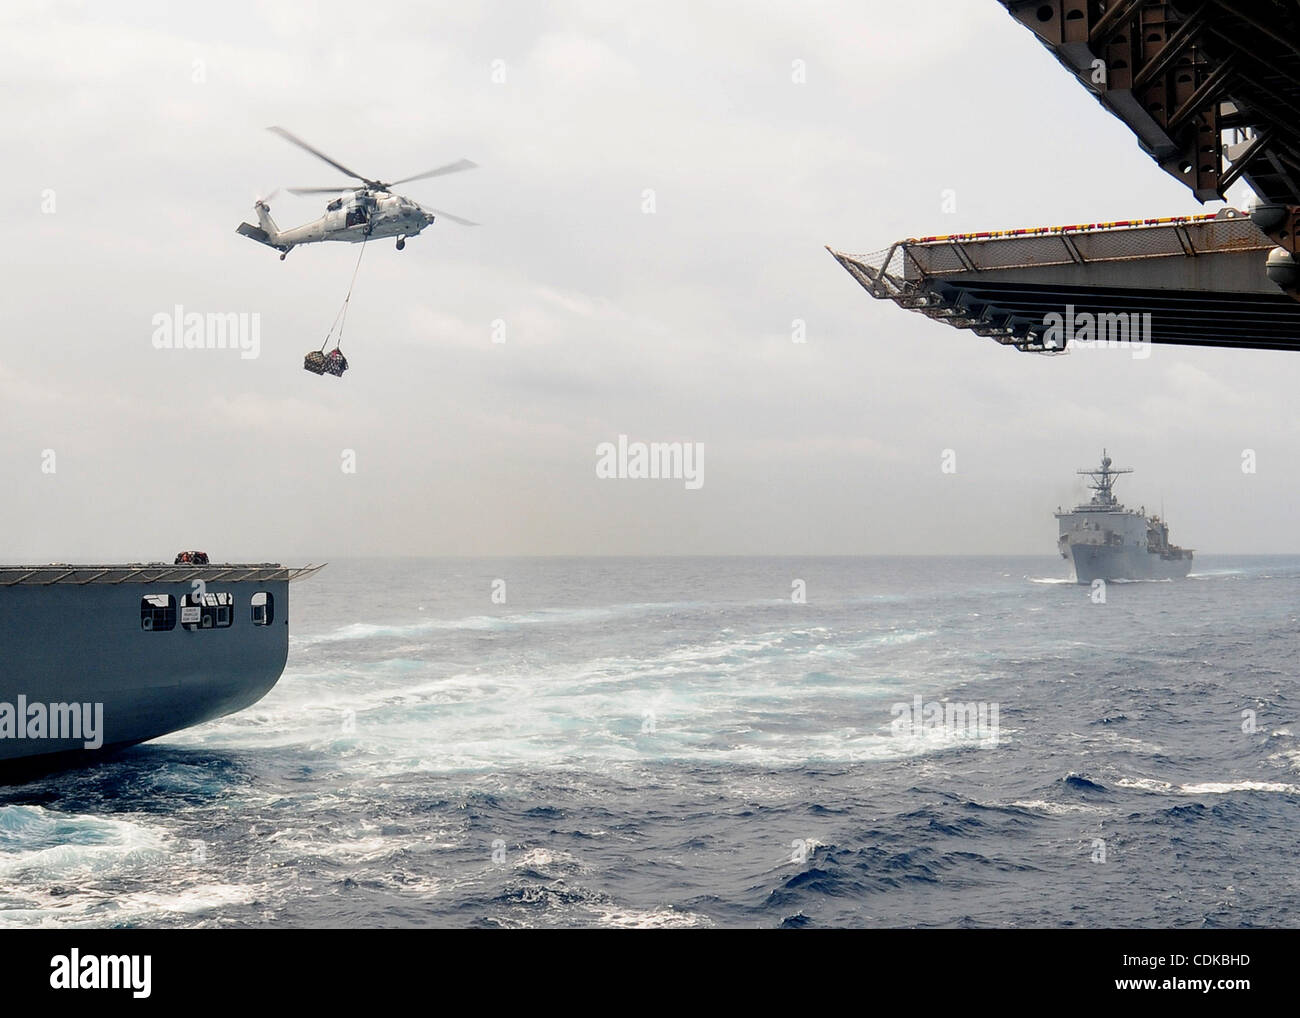 El 15 de marzo, 2011 - Japón - 110315-N-5538K-183 mar Filipino (Mar. 15, 2011) un MH-60S Sea Hawk helicóptero desplaza la asistencia humanitaria y de socorro en casos de desastre los suministros procedentes de la carga seca/municiones buque USNS Matthew Perry (T-AKE 9) desplegadas en el buque de asalto anfibio USS Essex (LHD 2) durante Foto de stock